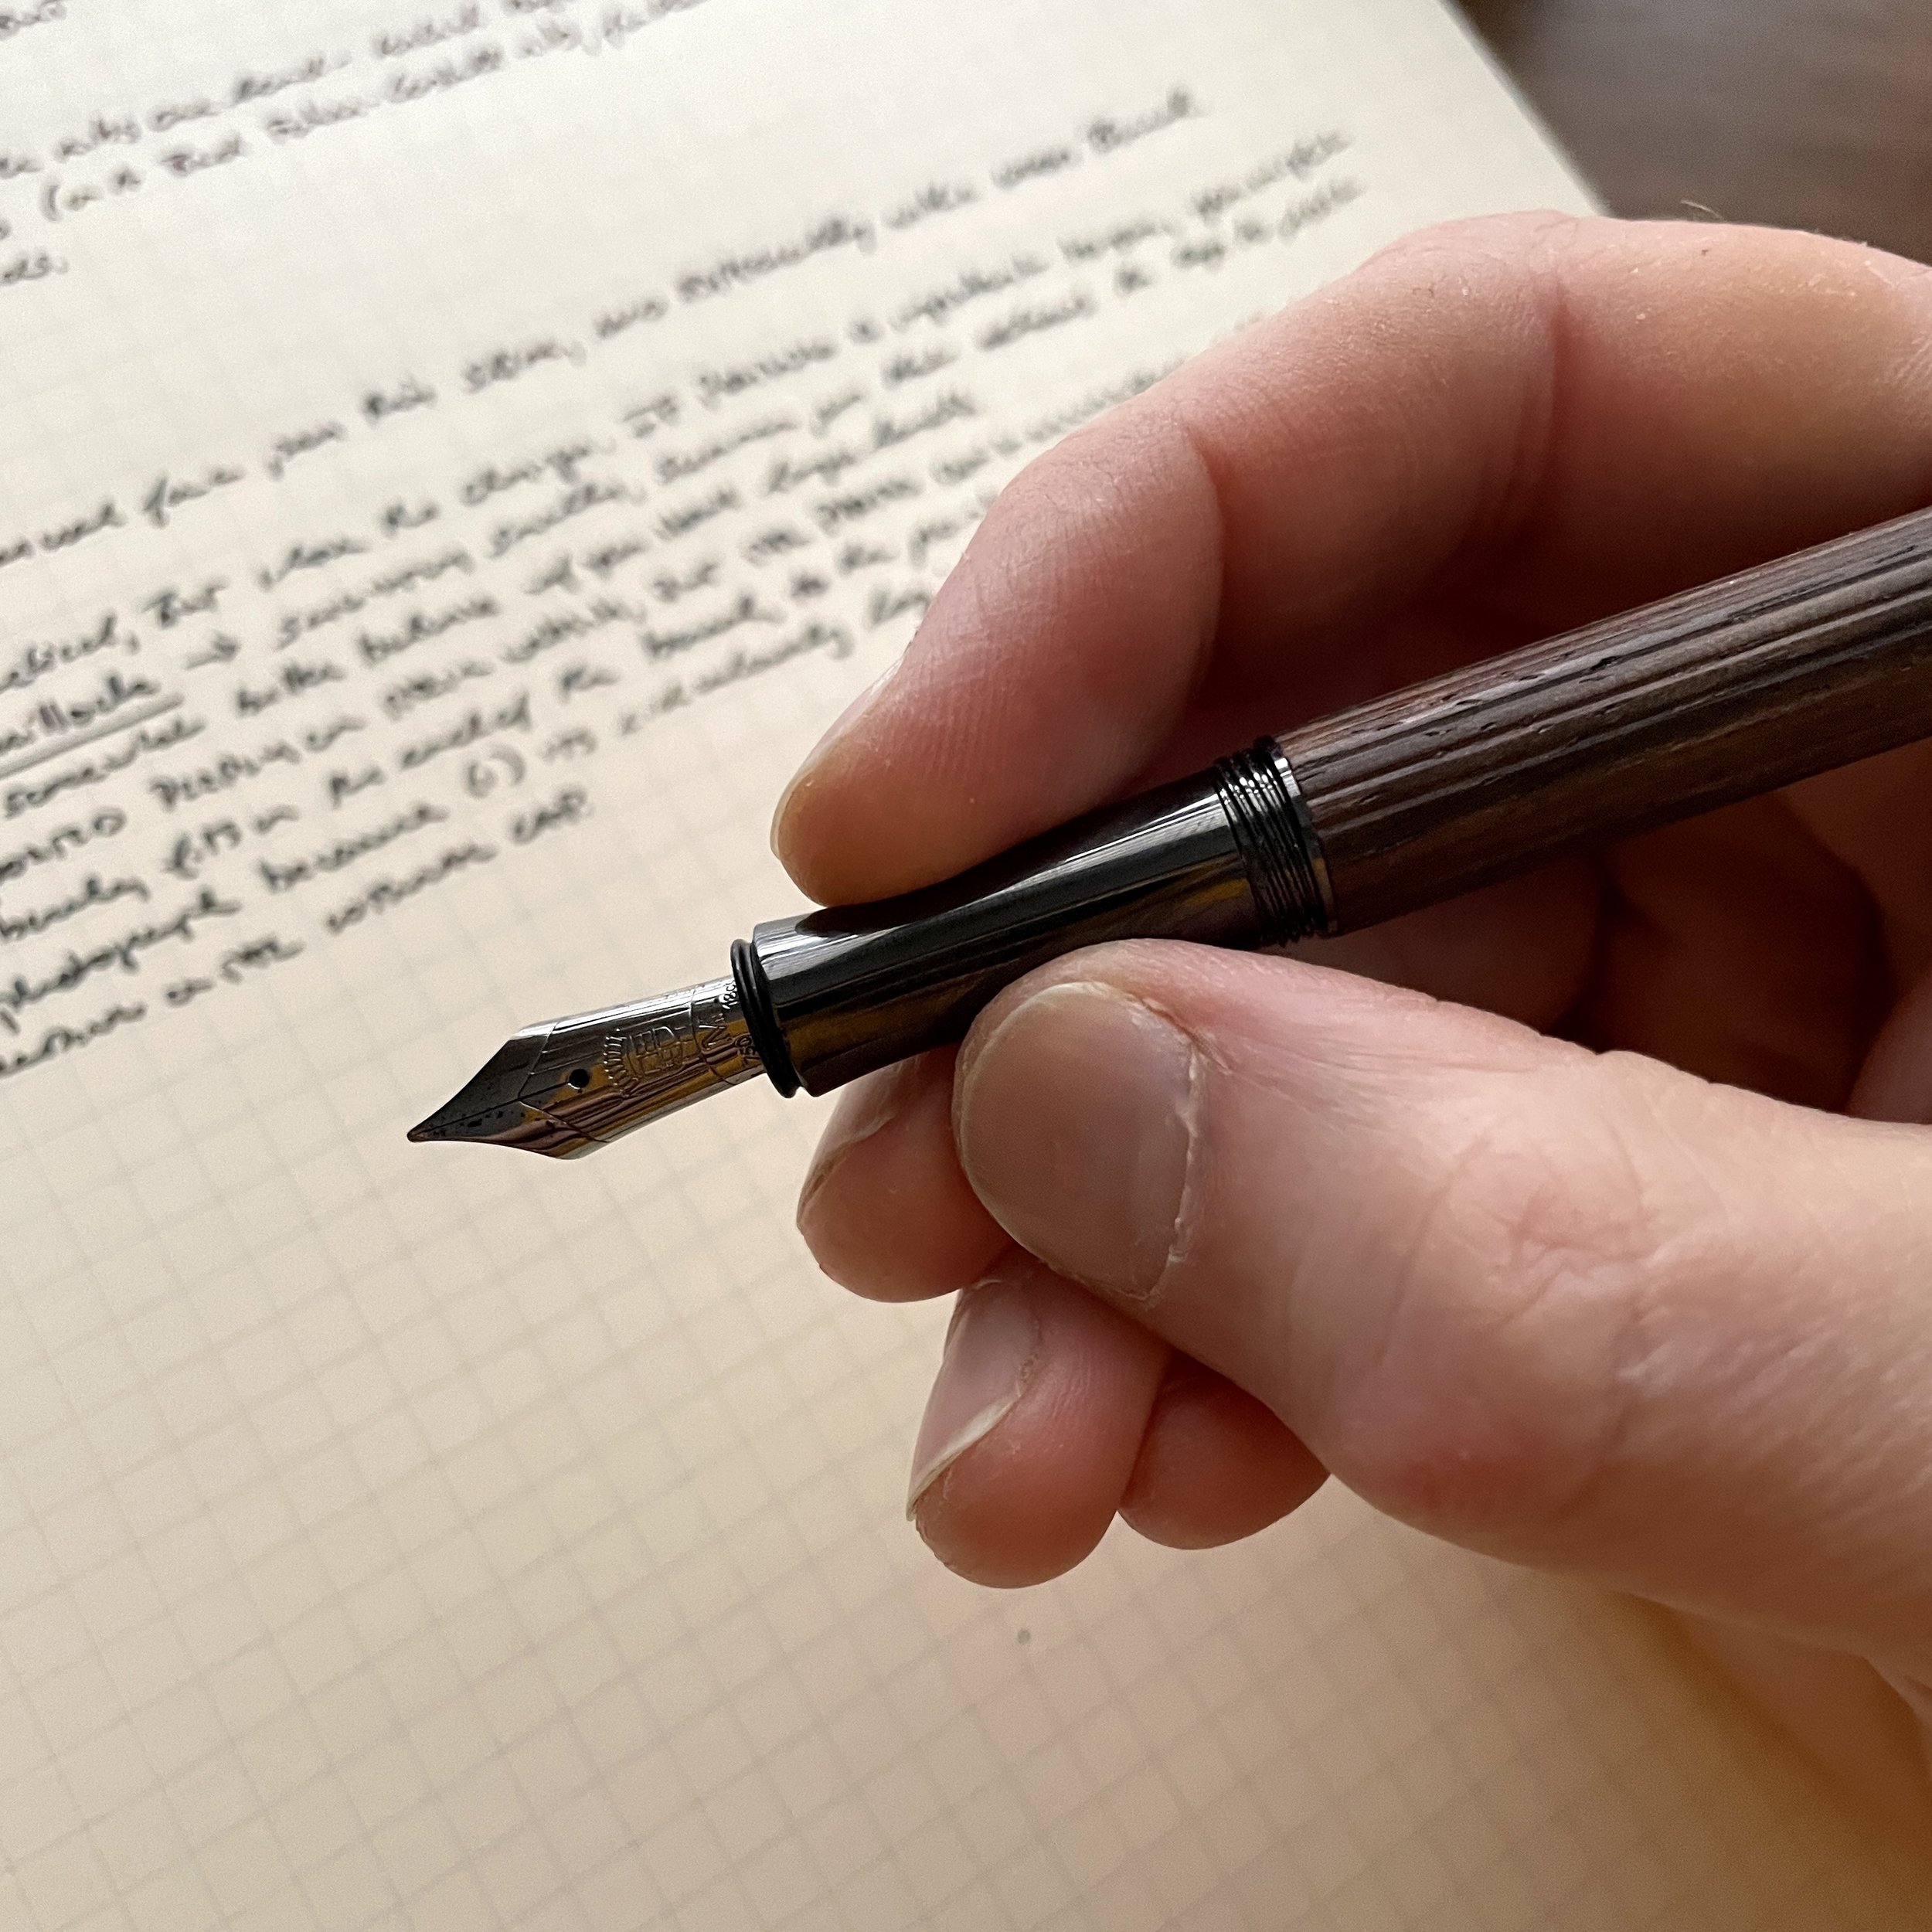 Pen Review: Graf von Faber-Castell Classic Macassar Fountain Pen